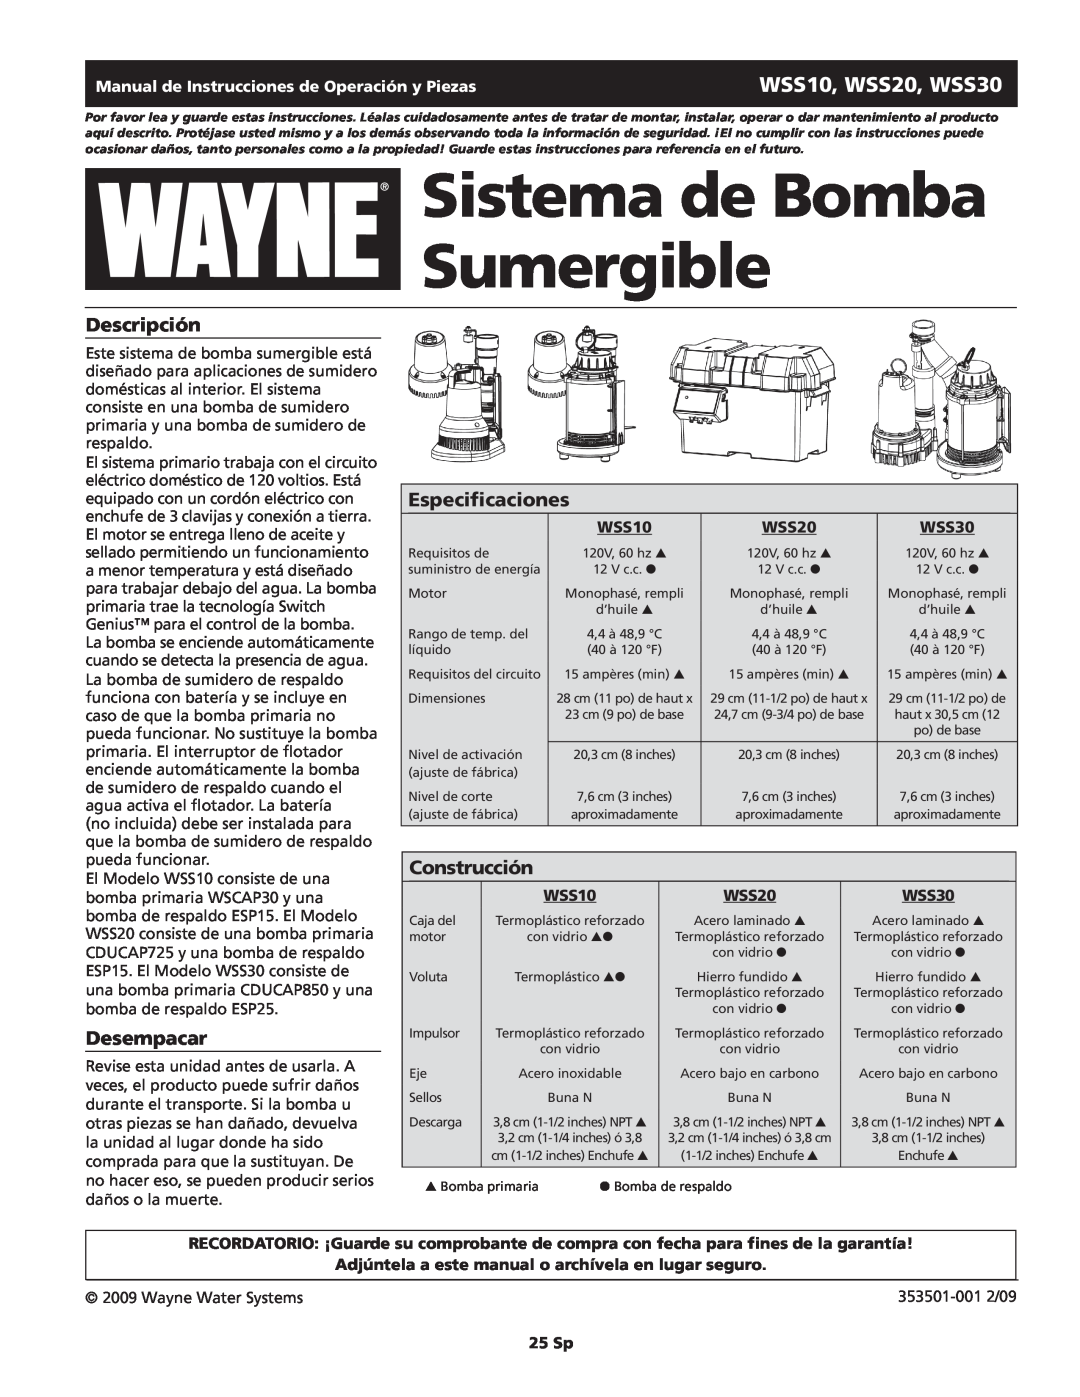 Wayne WSS20 Sistema de Bomba Sumergible, Descripción, Especificaciones, Construcción, Desempacar, 25 Sp, WSS10, WSS30 